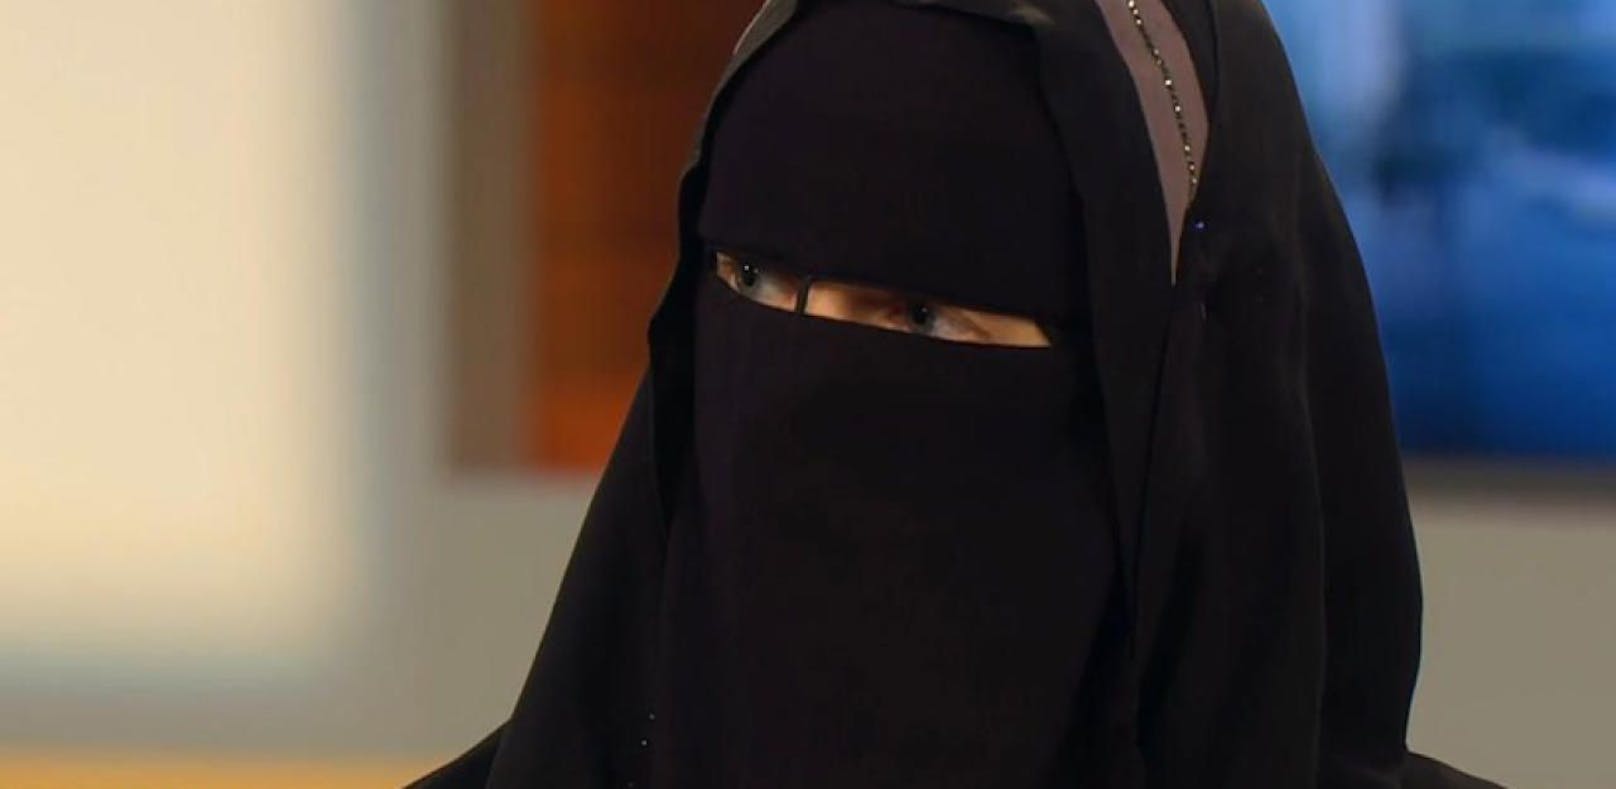 Nora Illi vergleicht Burka-Verbot mit Holocaust